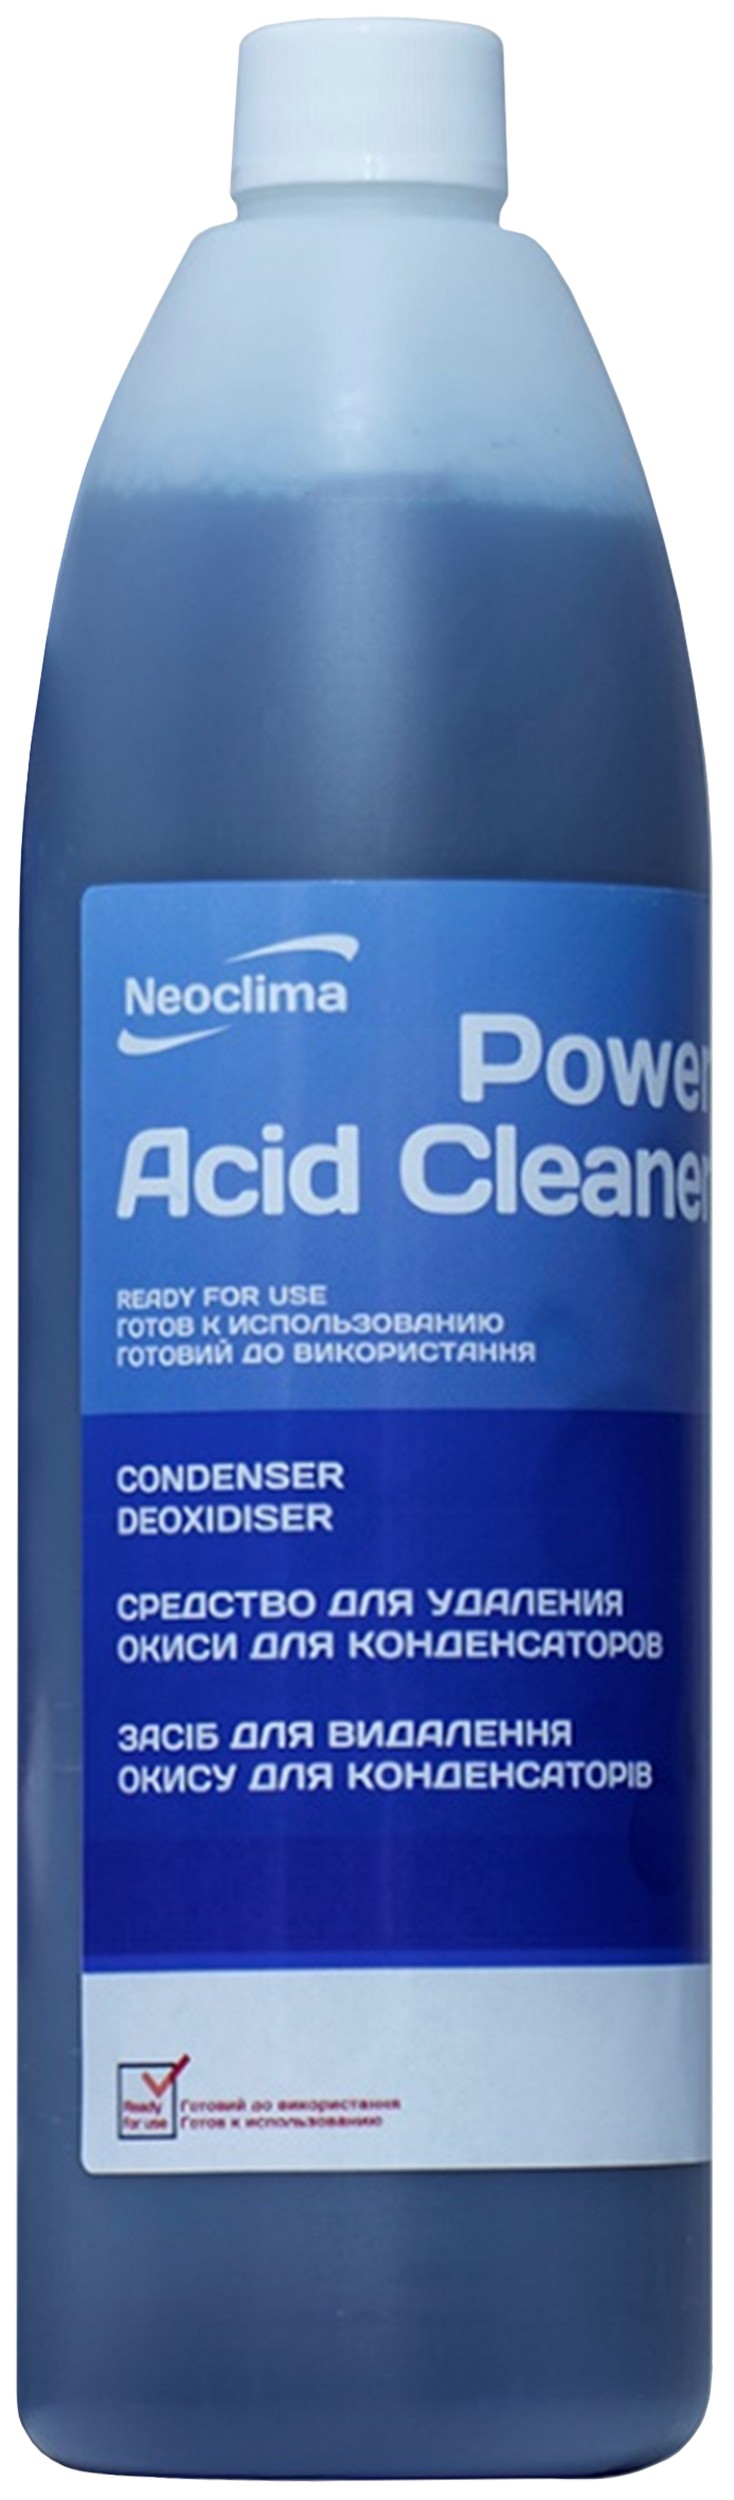 Отзывы очиститель внешнего блока Neoclima Power Acid Cleaner 1 л, спрей в Украине